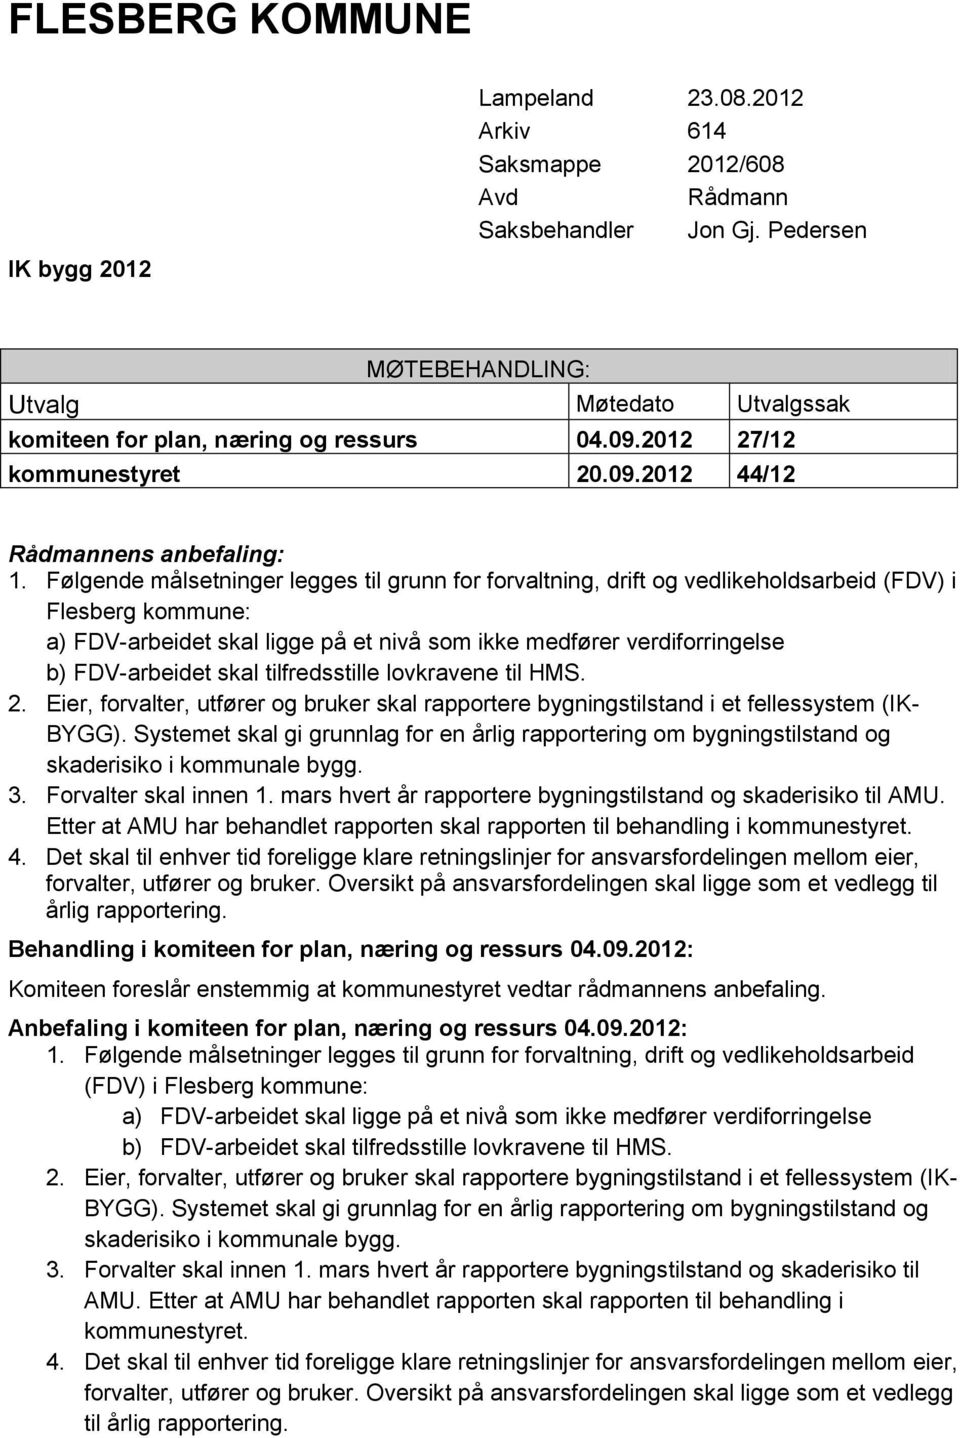 Følgende målsetninger legges til grunn for forvaltning, drift og vedlikeholdsarbeid (FDV) i Flesberg kommune: a) FDV-arbeidet skal ligge på et nivå som ikke medfører verdiforringelse b) FDV-arbeidet